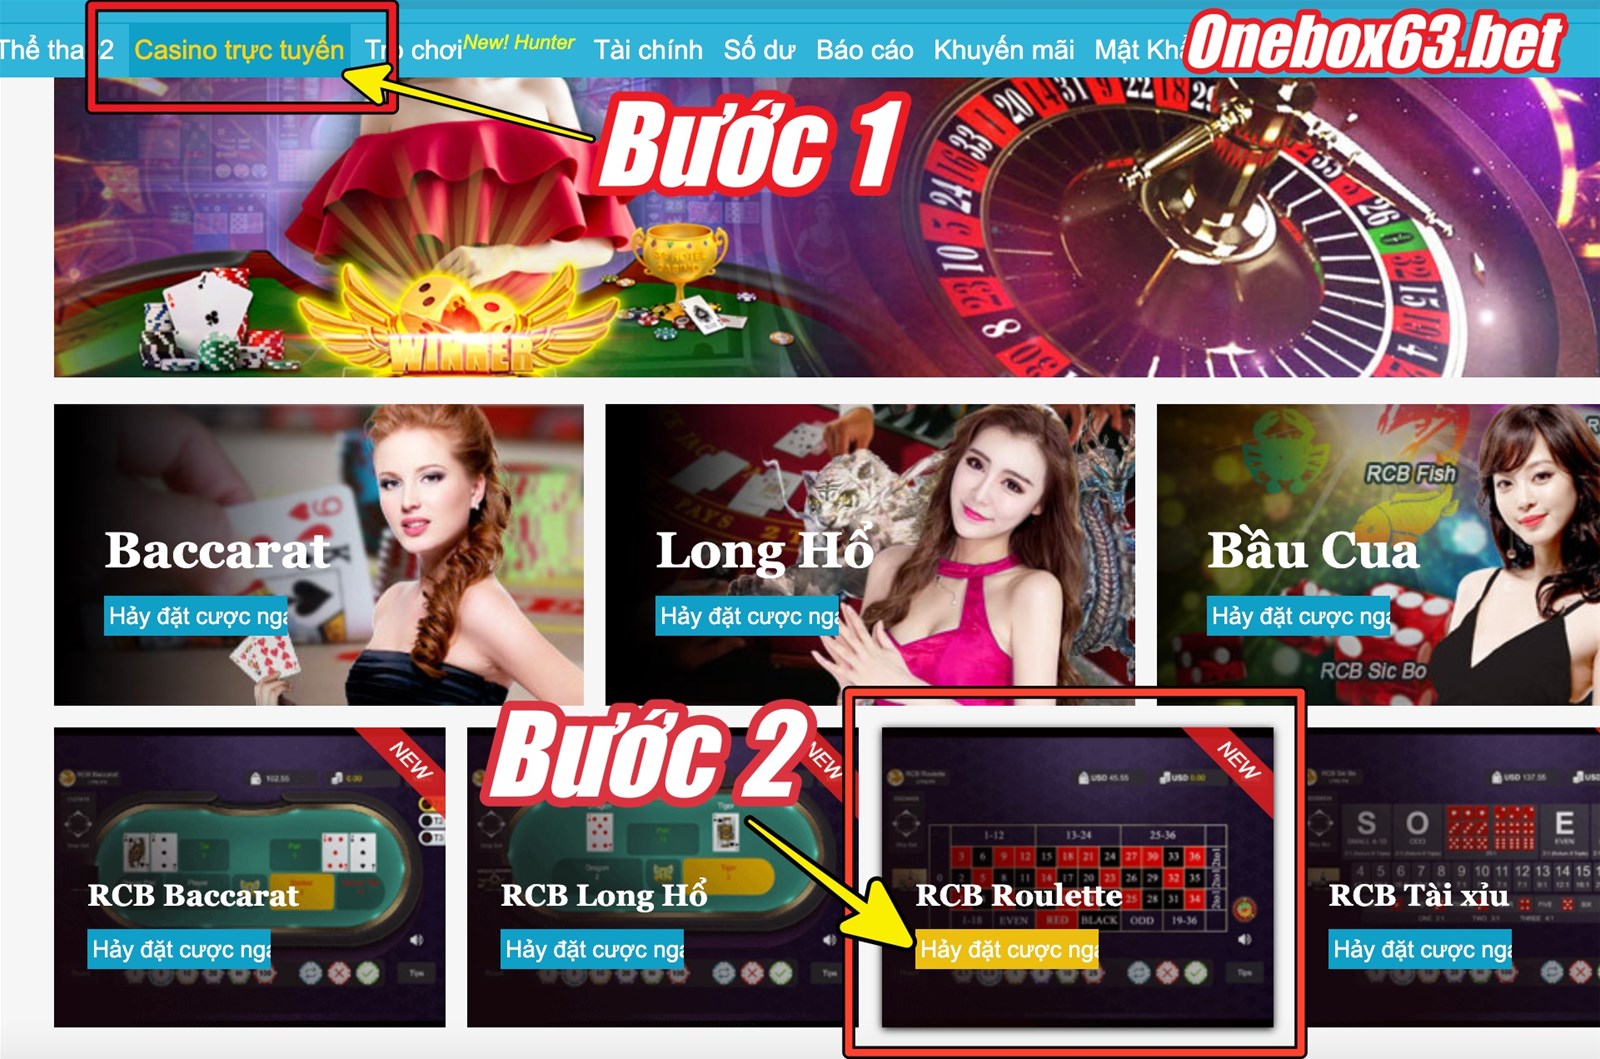 Hướng dẫn vào sòng casino online chơi roulette ăn tiền người quay thật